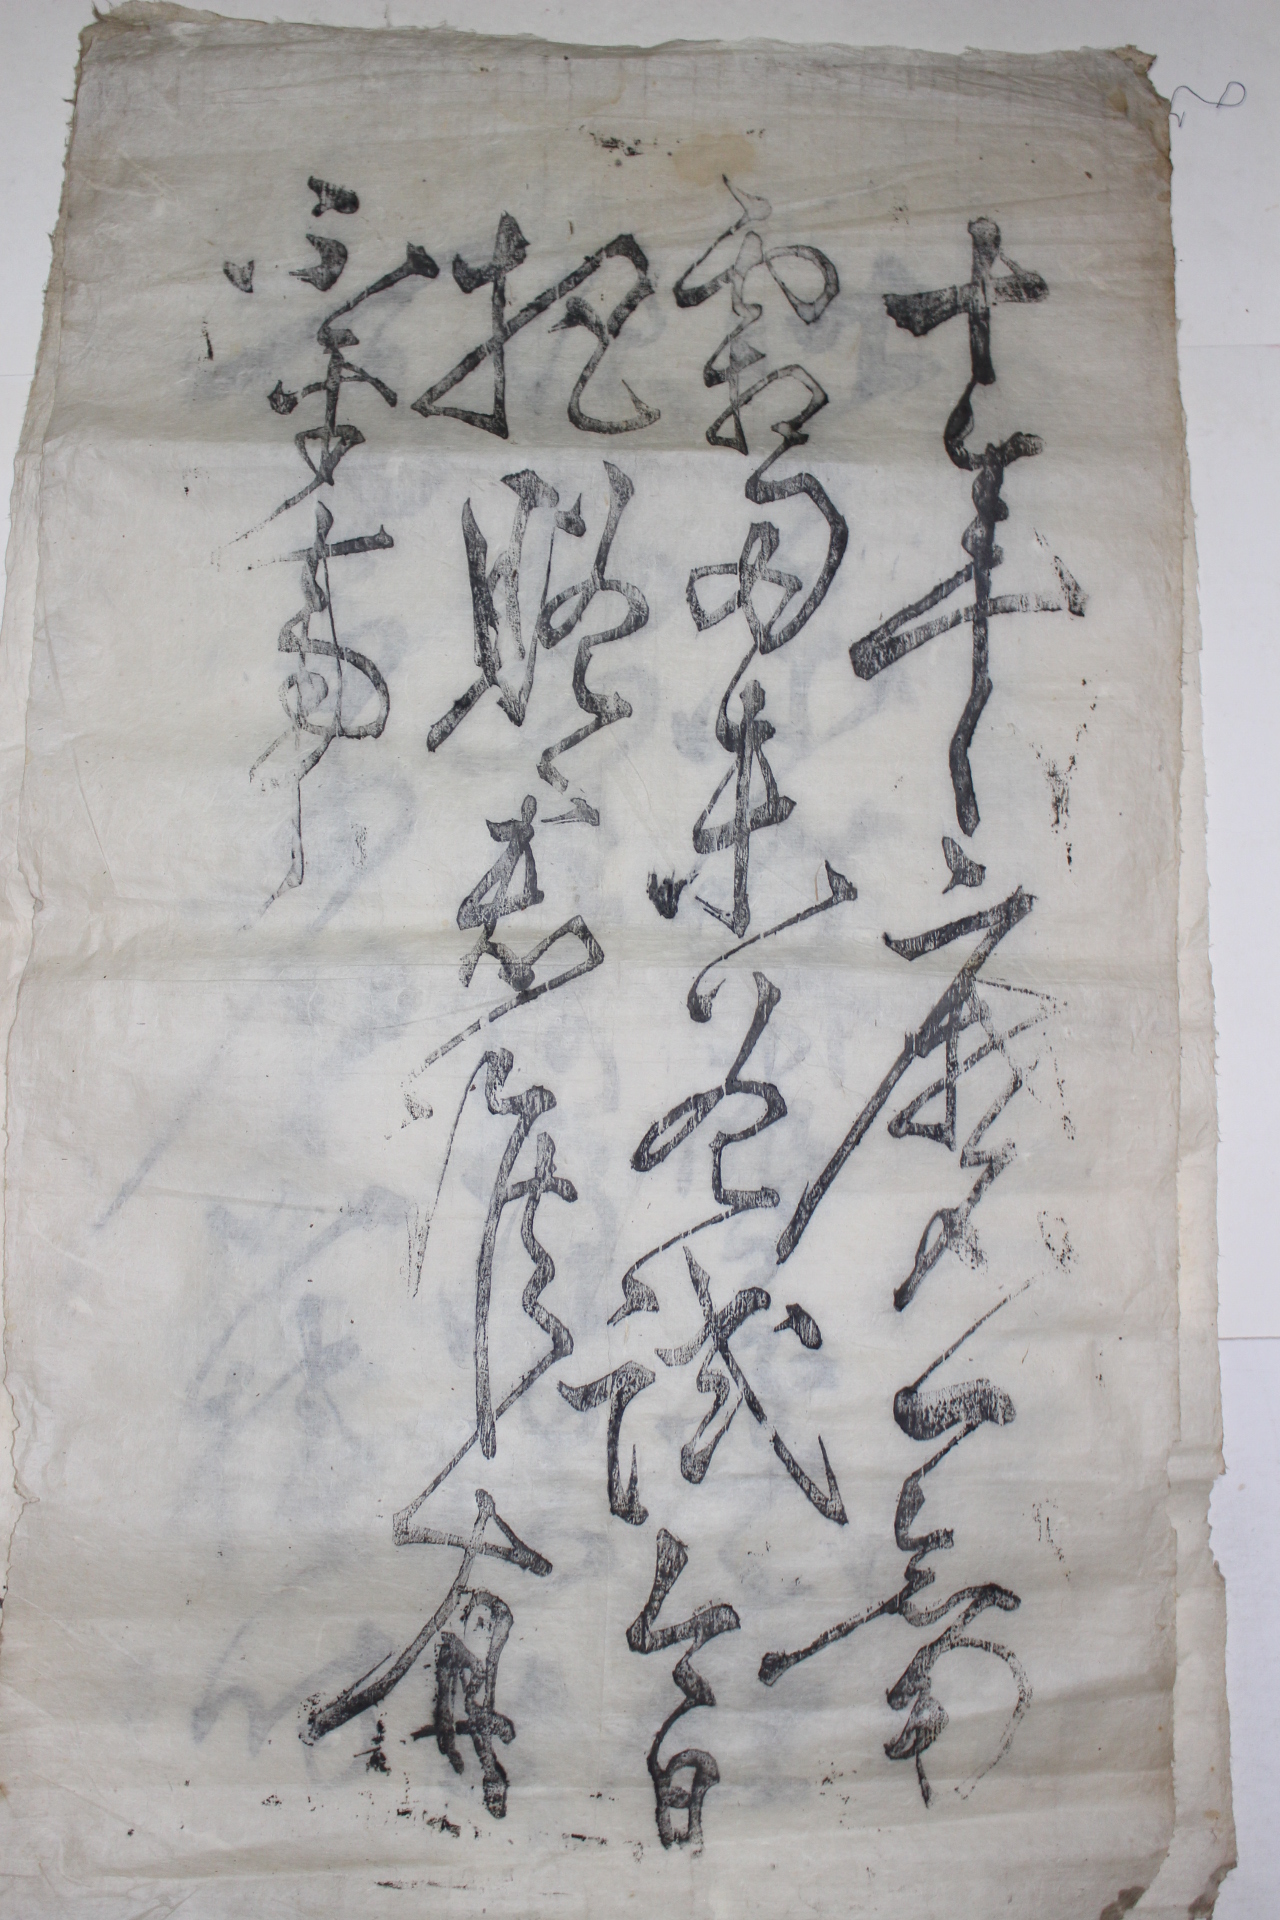 172-조선시대 고산(孤山) 황기로(黃耆老) 목판 초서 10폭완질